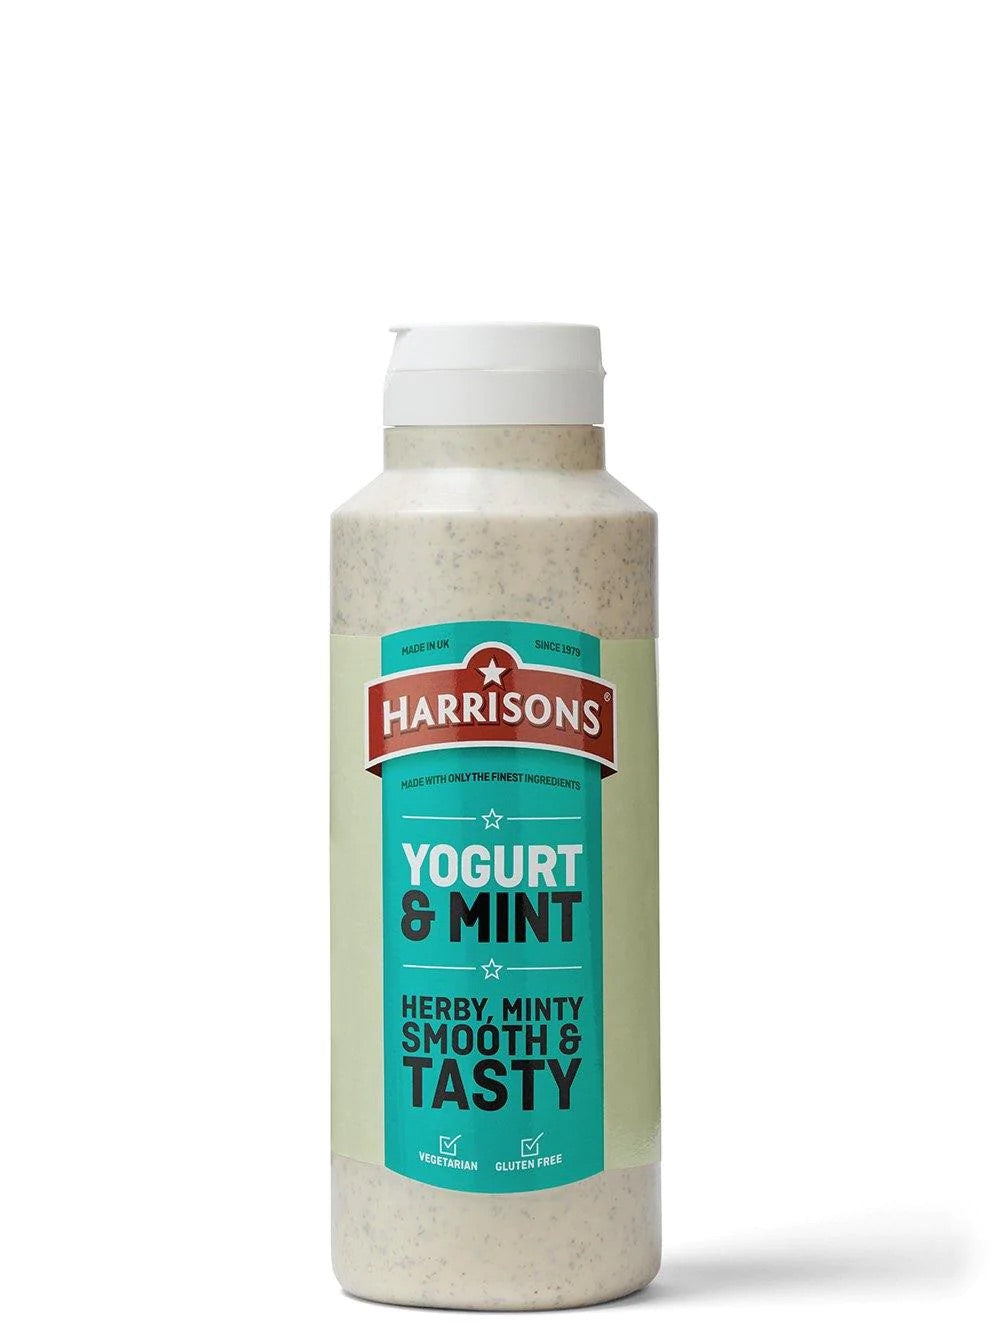 Harrisons Yogurt & MInt